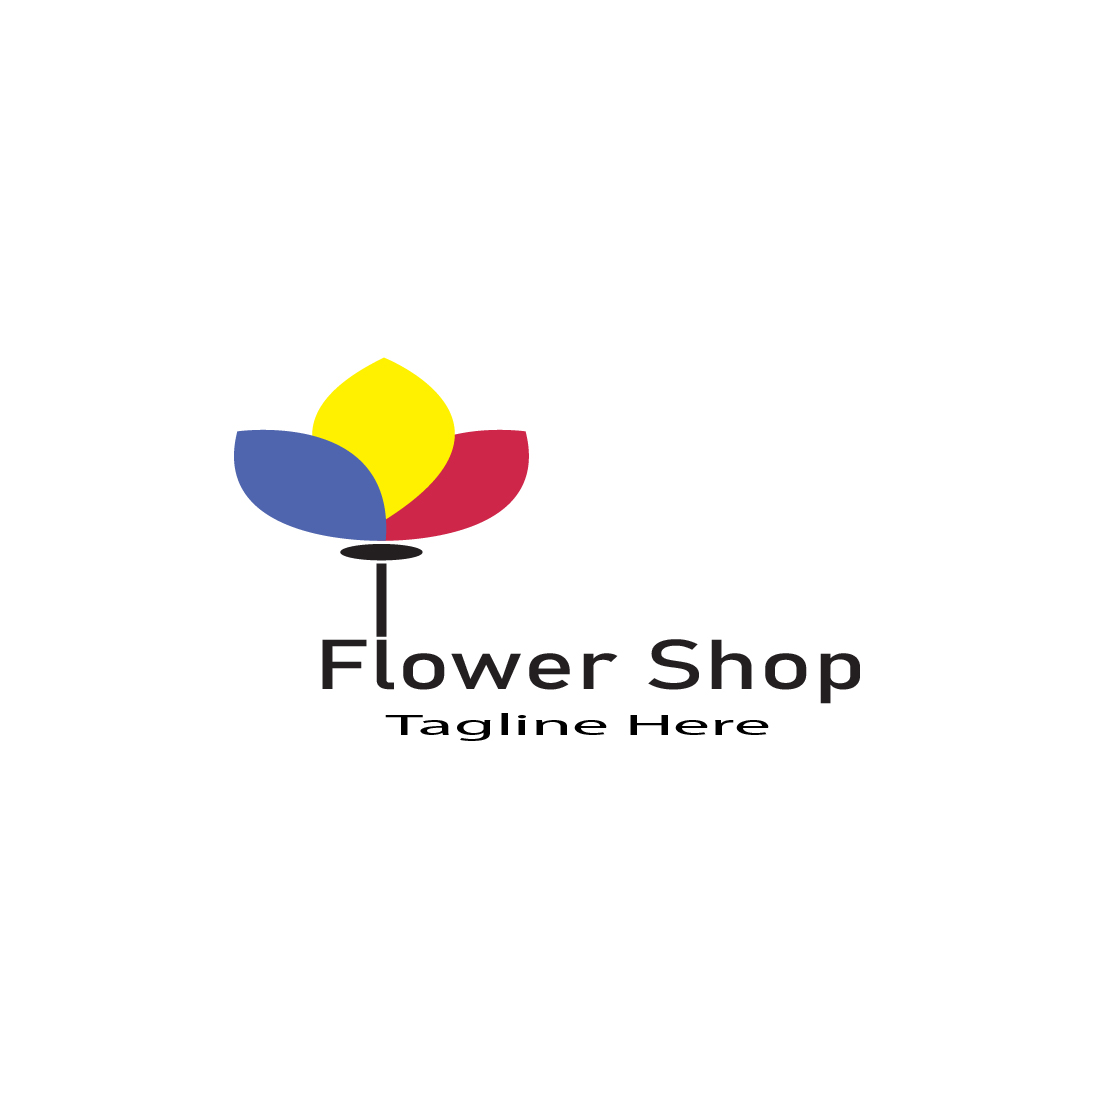 Flower Shop Logo main cover.